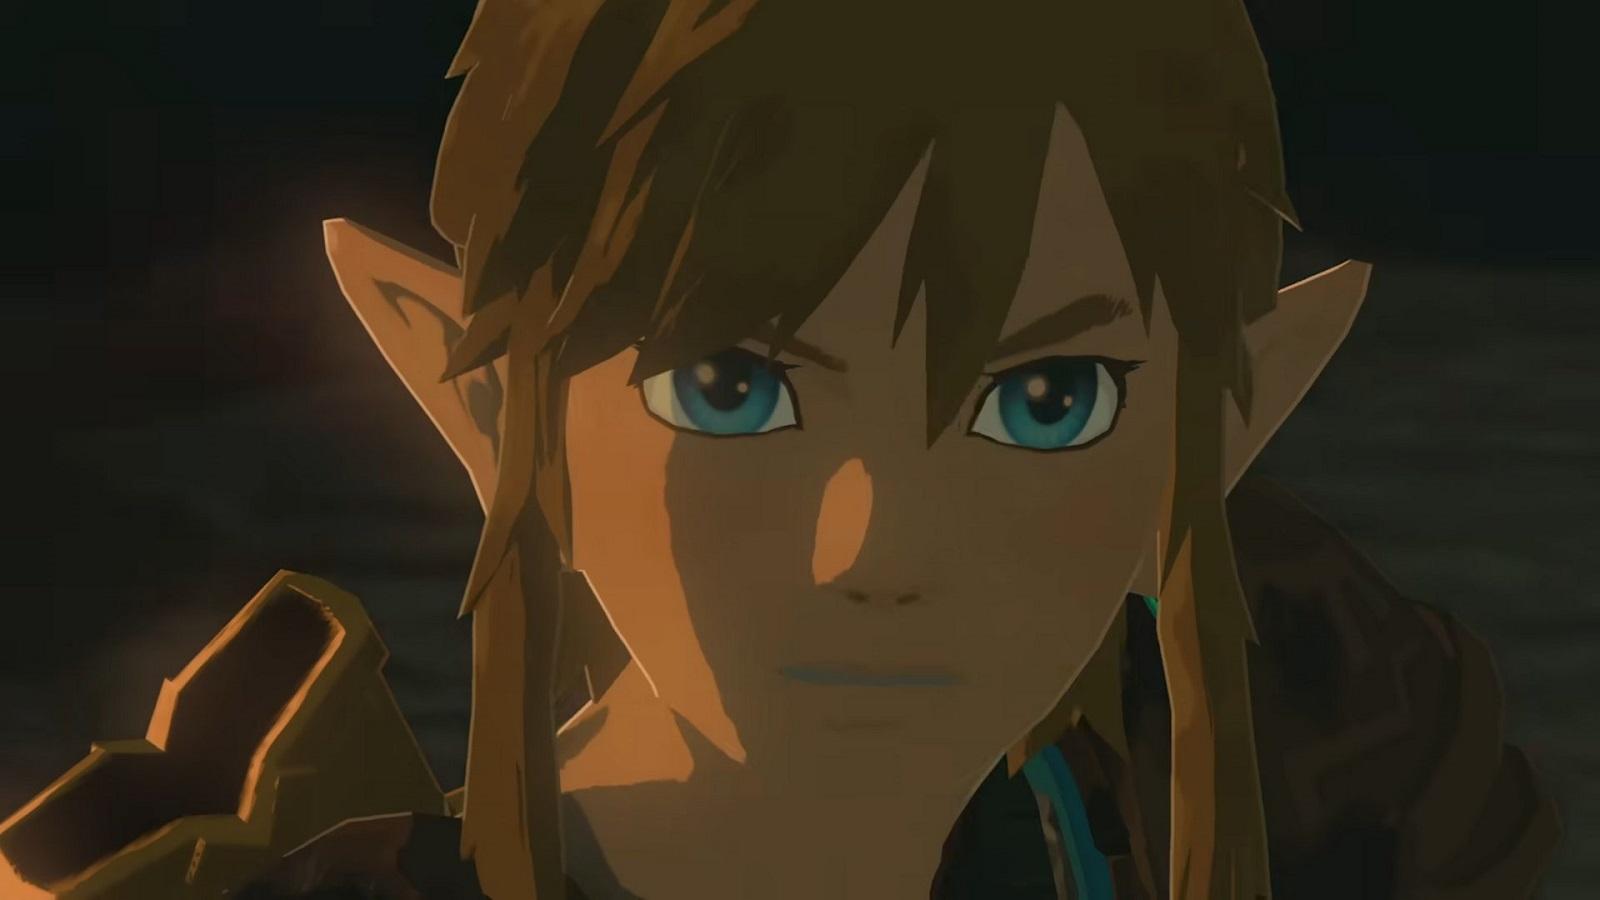 Link staring at the camera